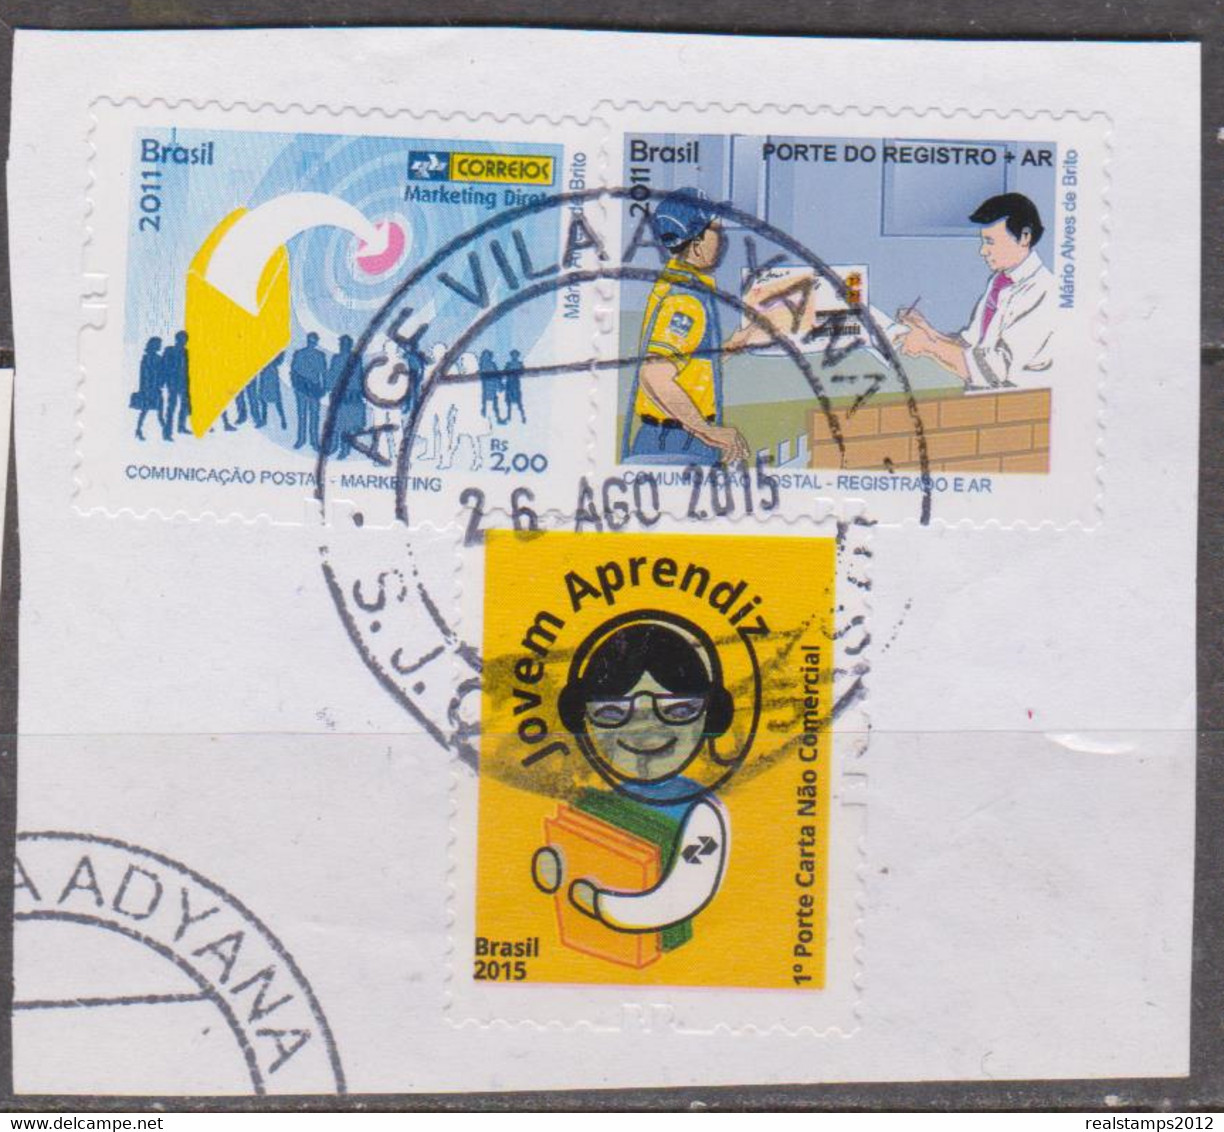 Brasil -2011/2015 -Comunicação Postal-Registrado E Ar + Jovem Aprendiz, 1ºporte Carta Não Com (S/ Sobscrito) (o)  RHM Nº - Gebraucht